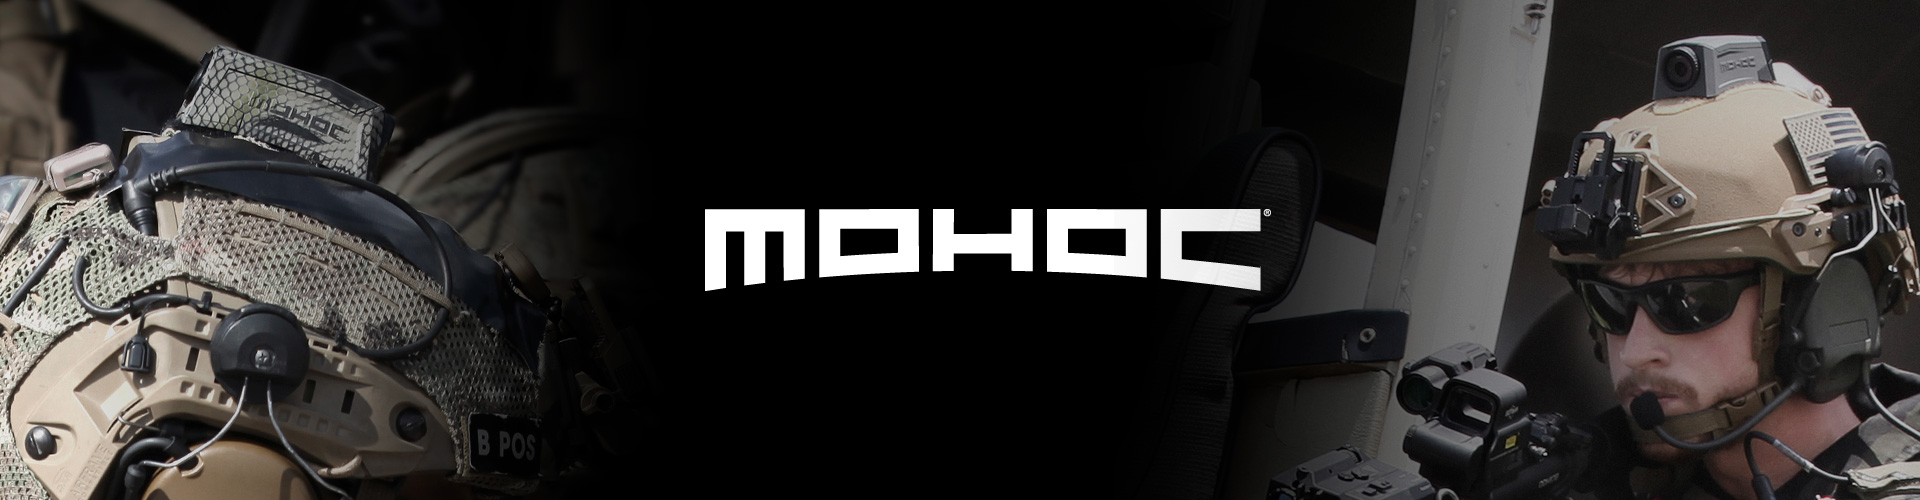 MOHOC Elite Ops